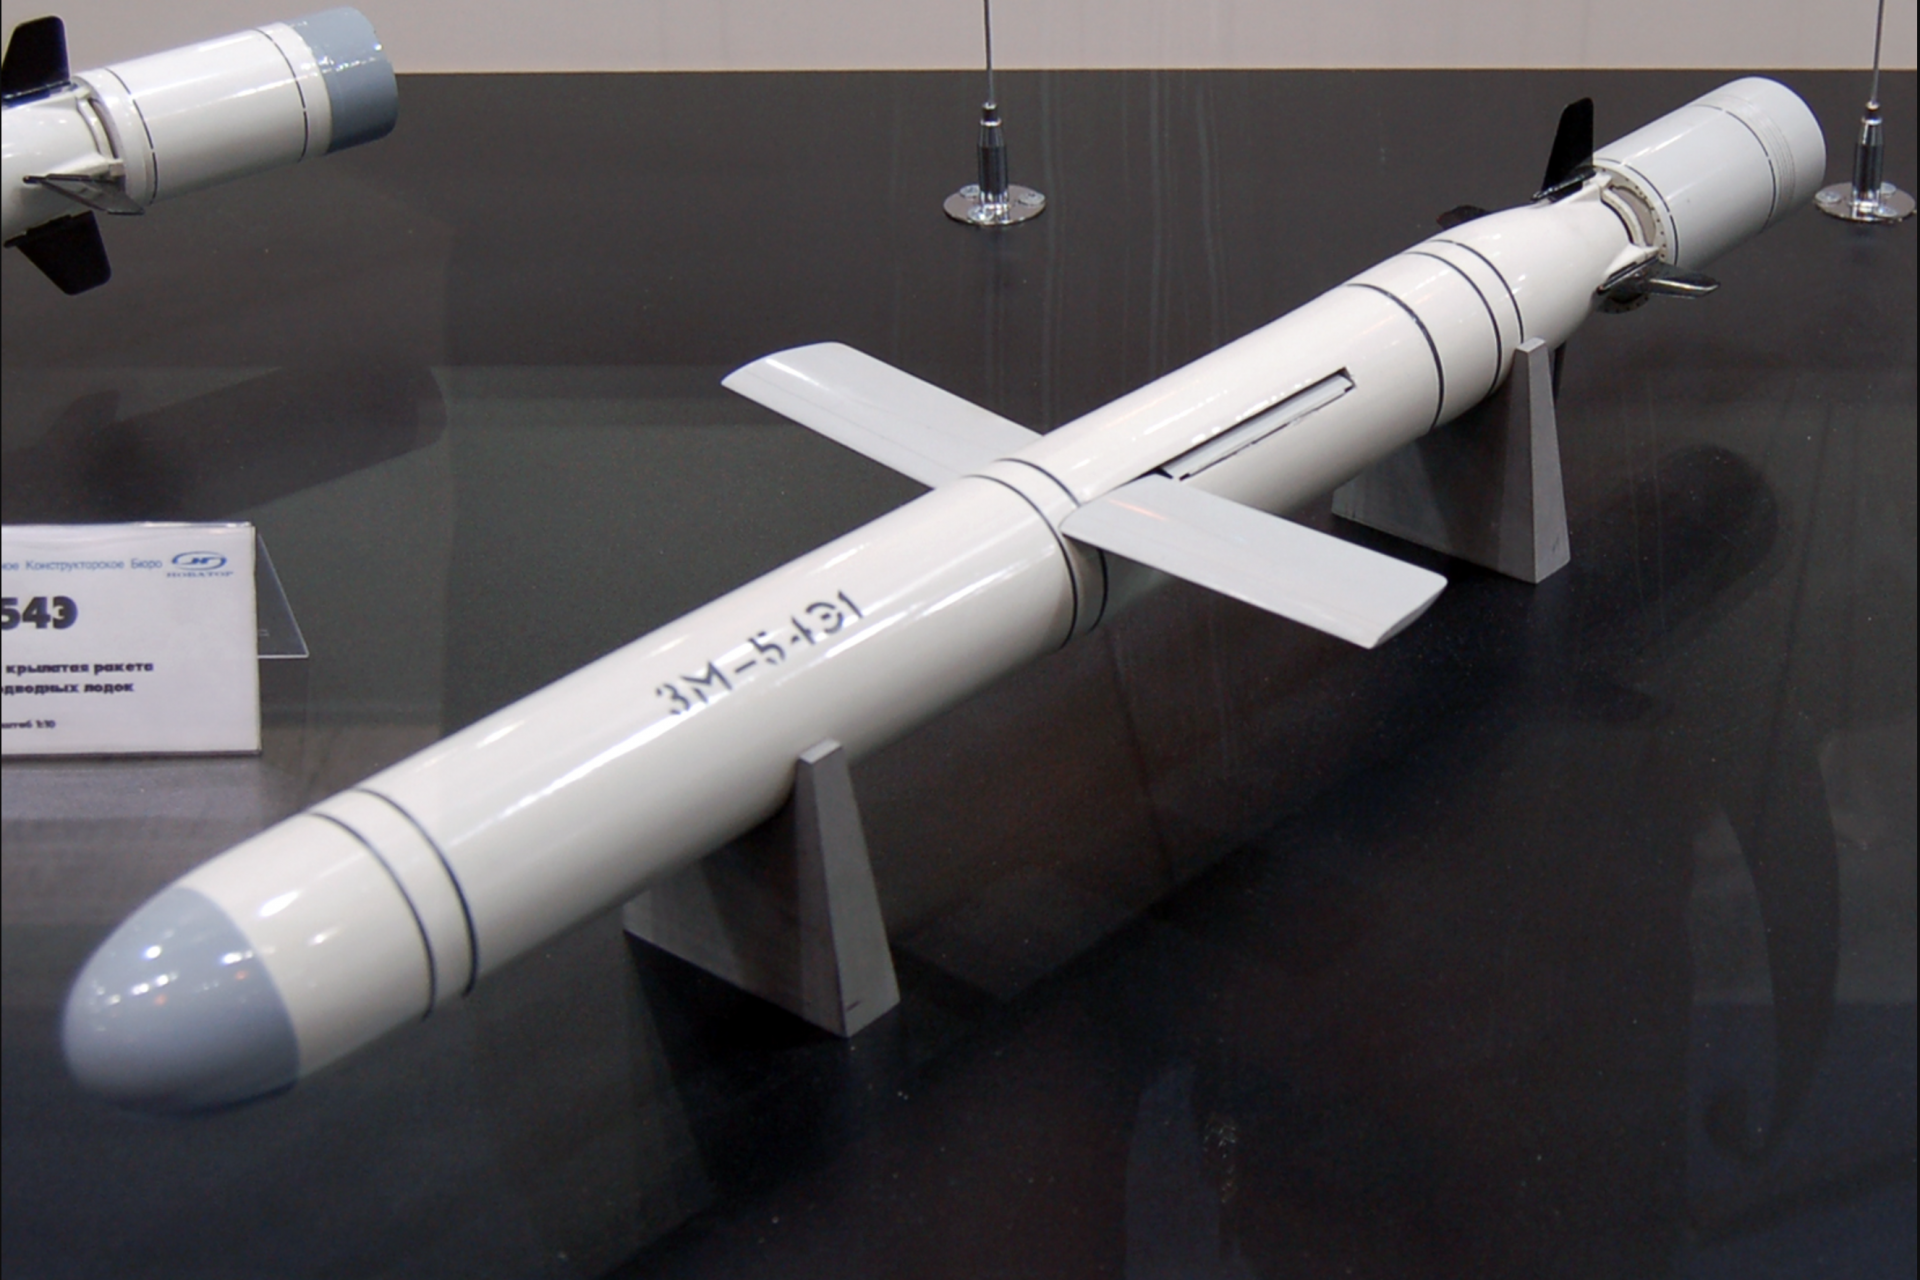 17 Kalibr cruise missiles were intercepted 